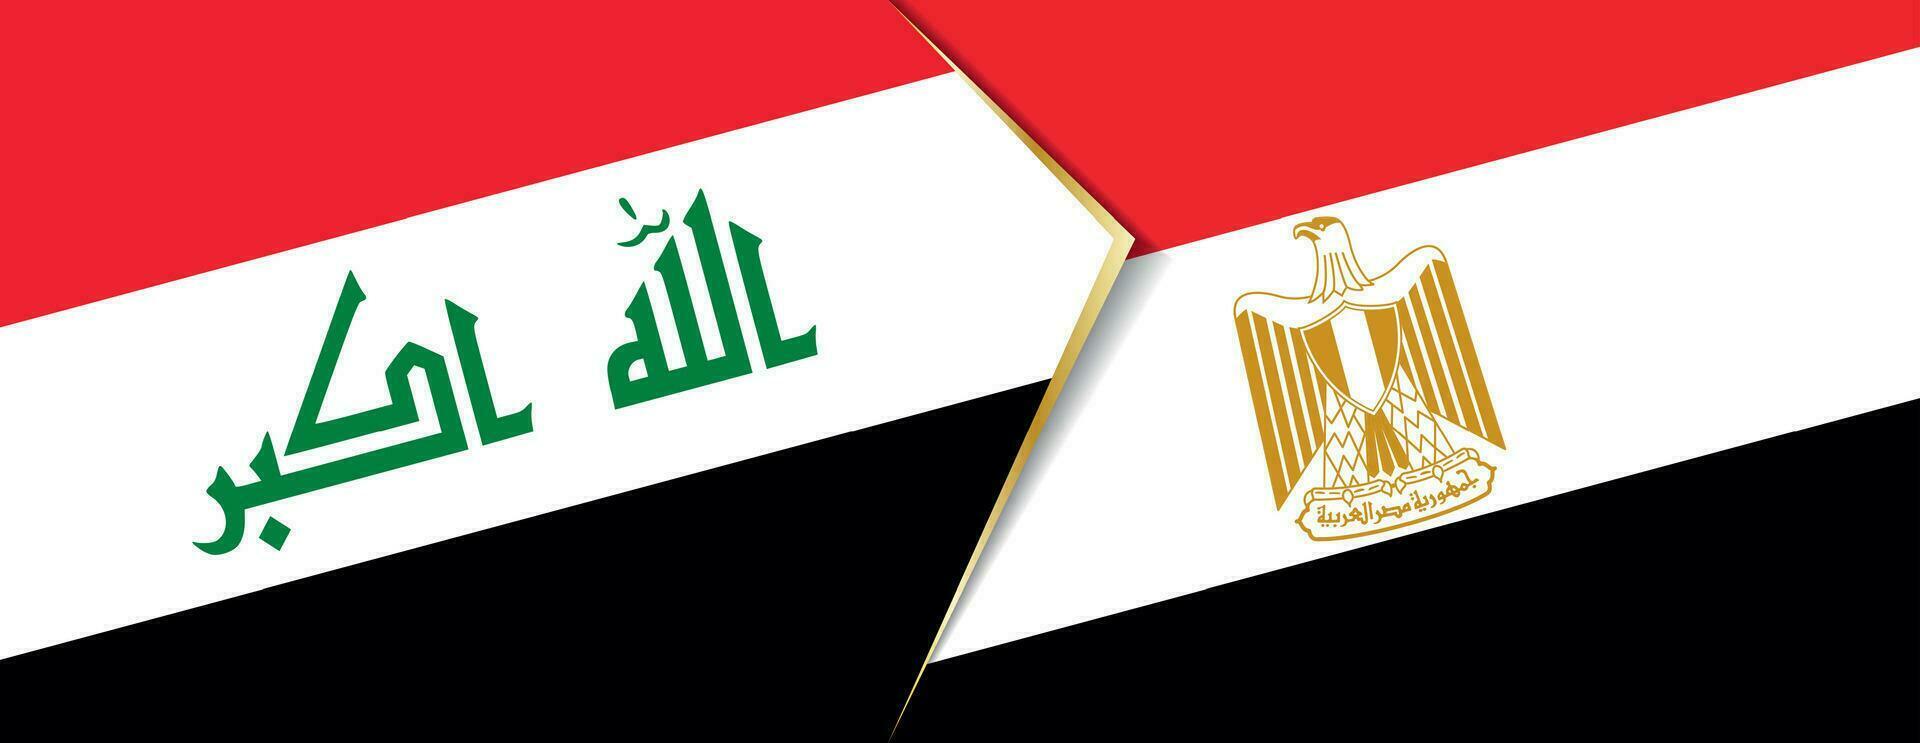 irak och egypten flaggor, två vektor flaggor.